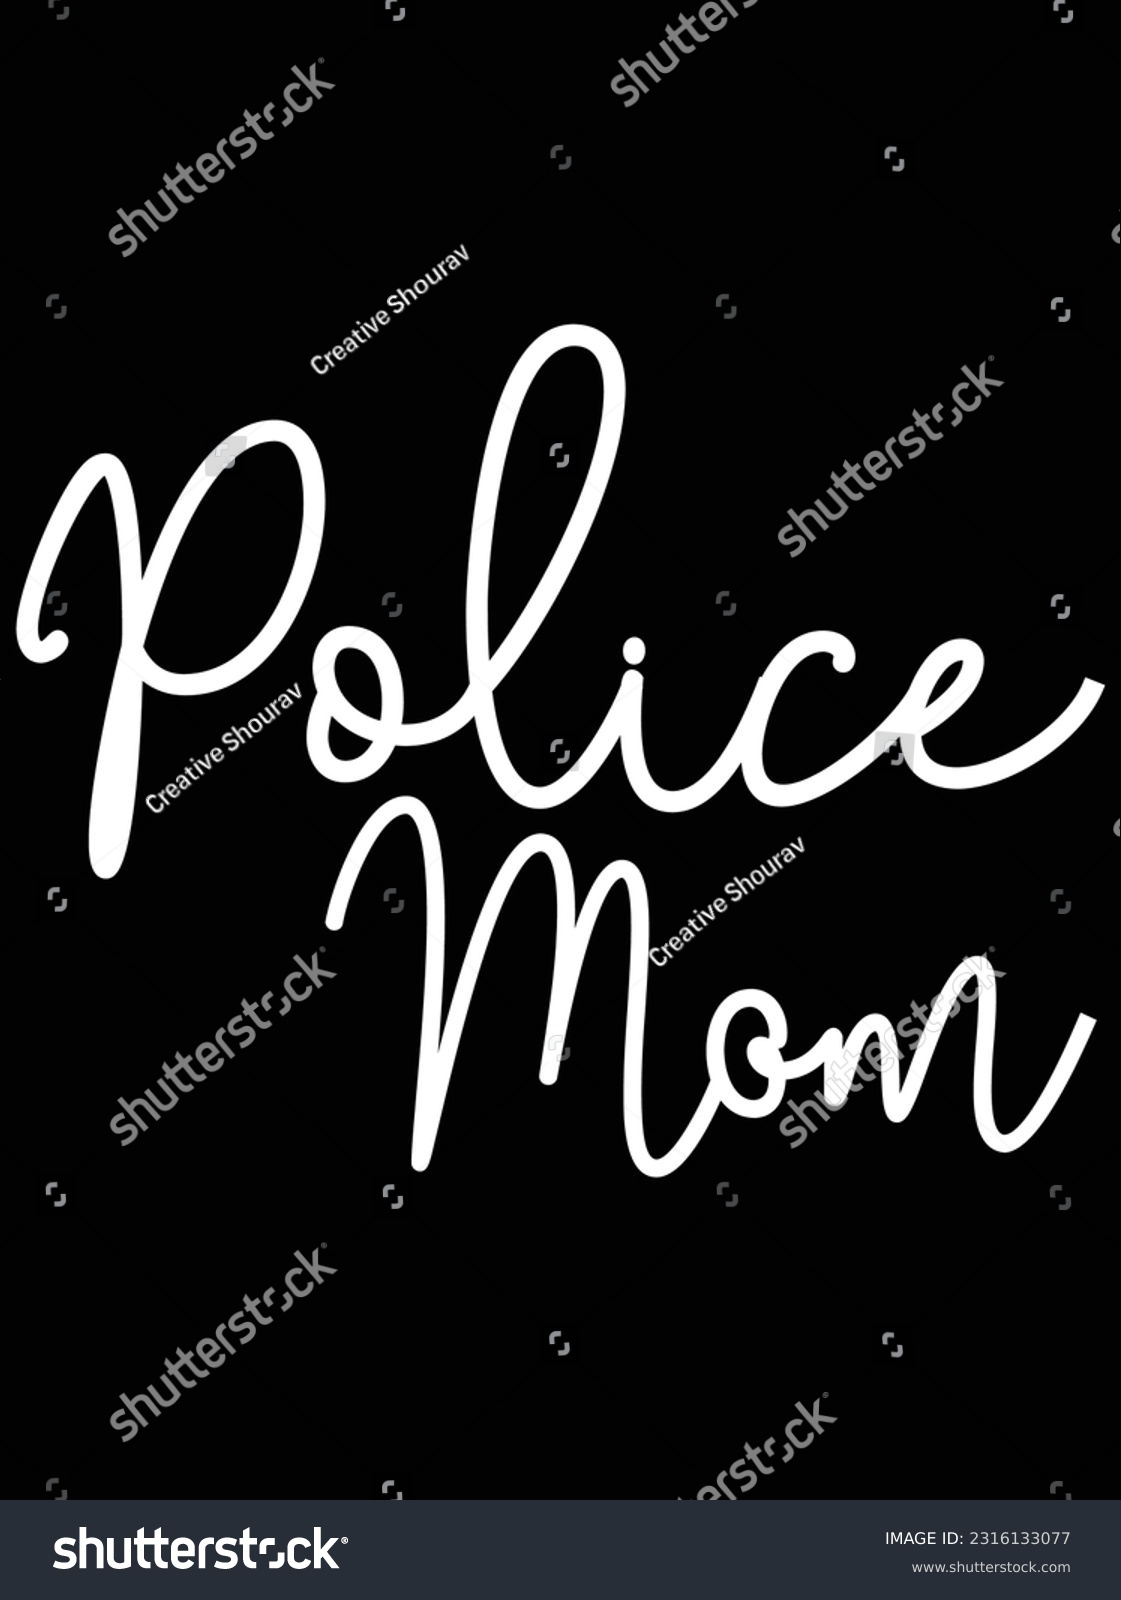 SVG of Police mom vector art design, eps file. design file for t-shirt. SVG, EPS cuttable design file svg